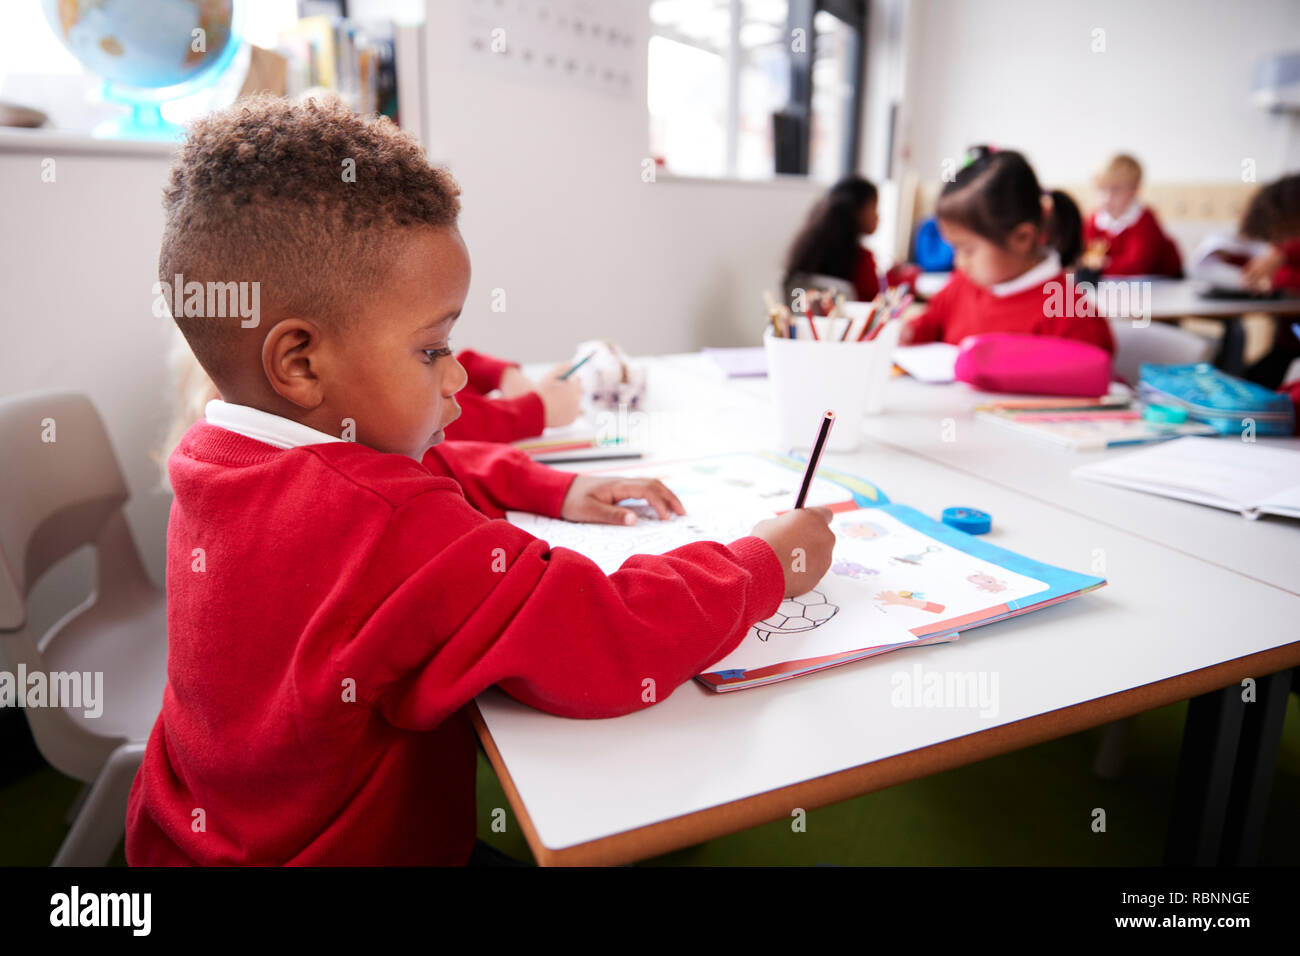 Junge schwarze Schüler tragen Schuluniform an einem Schreibtisch in einem Kind Schule Klassenzimmer Zeichnung sitzend, Nahaufnahme, Seitenansicht Stockfoto